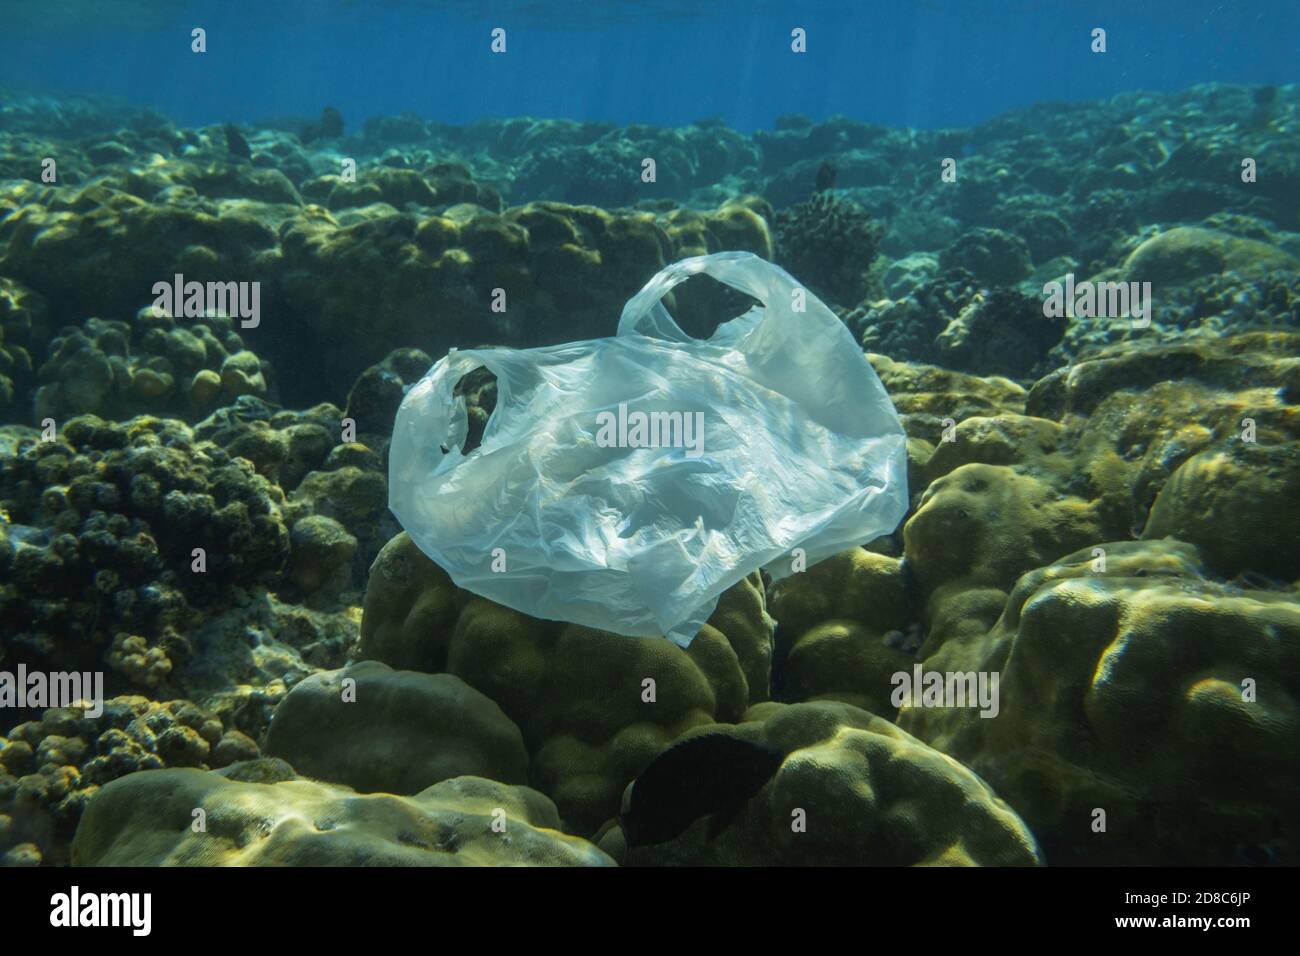 Gebrauchte weiße Plastiktüte langsam treiben unter Wasser über Korallenriff in den Sonnenlichtern. Plastikmüll unter Wasser. Plastikmüll Umweltpolluti Stockfoto